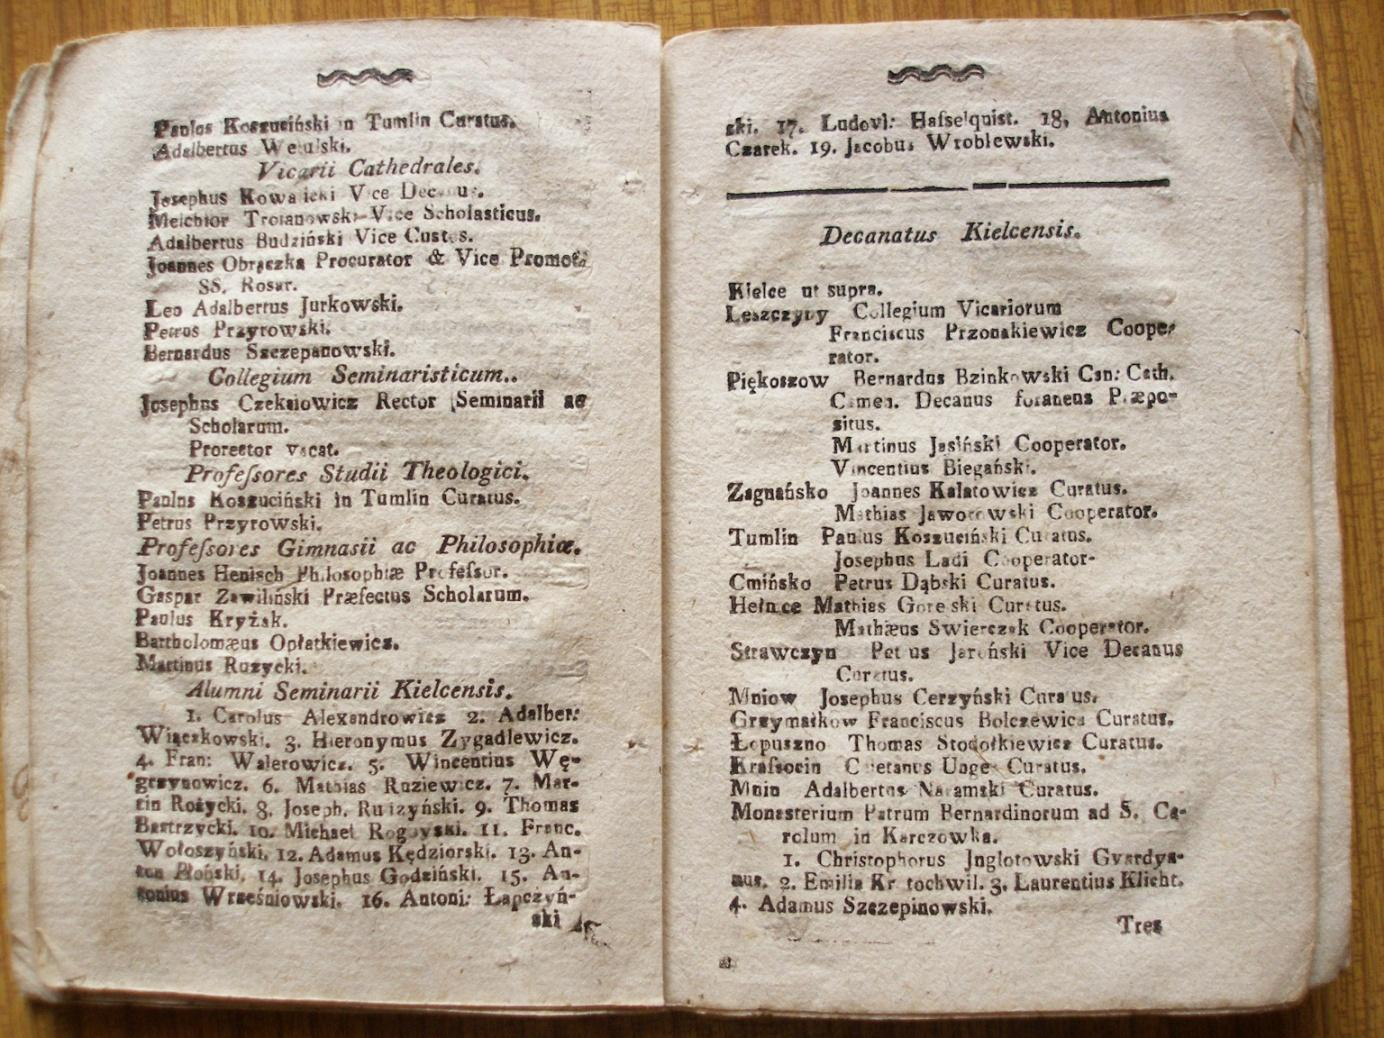 ADK, Rubrycela diecezji kieleckiej na rok 1811, [strony ze spisem